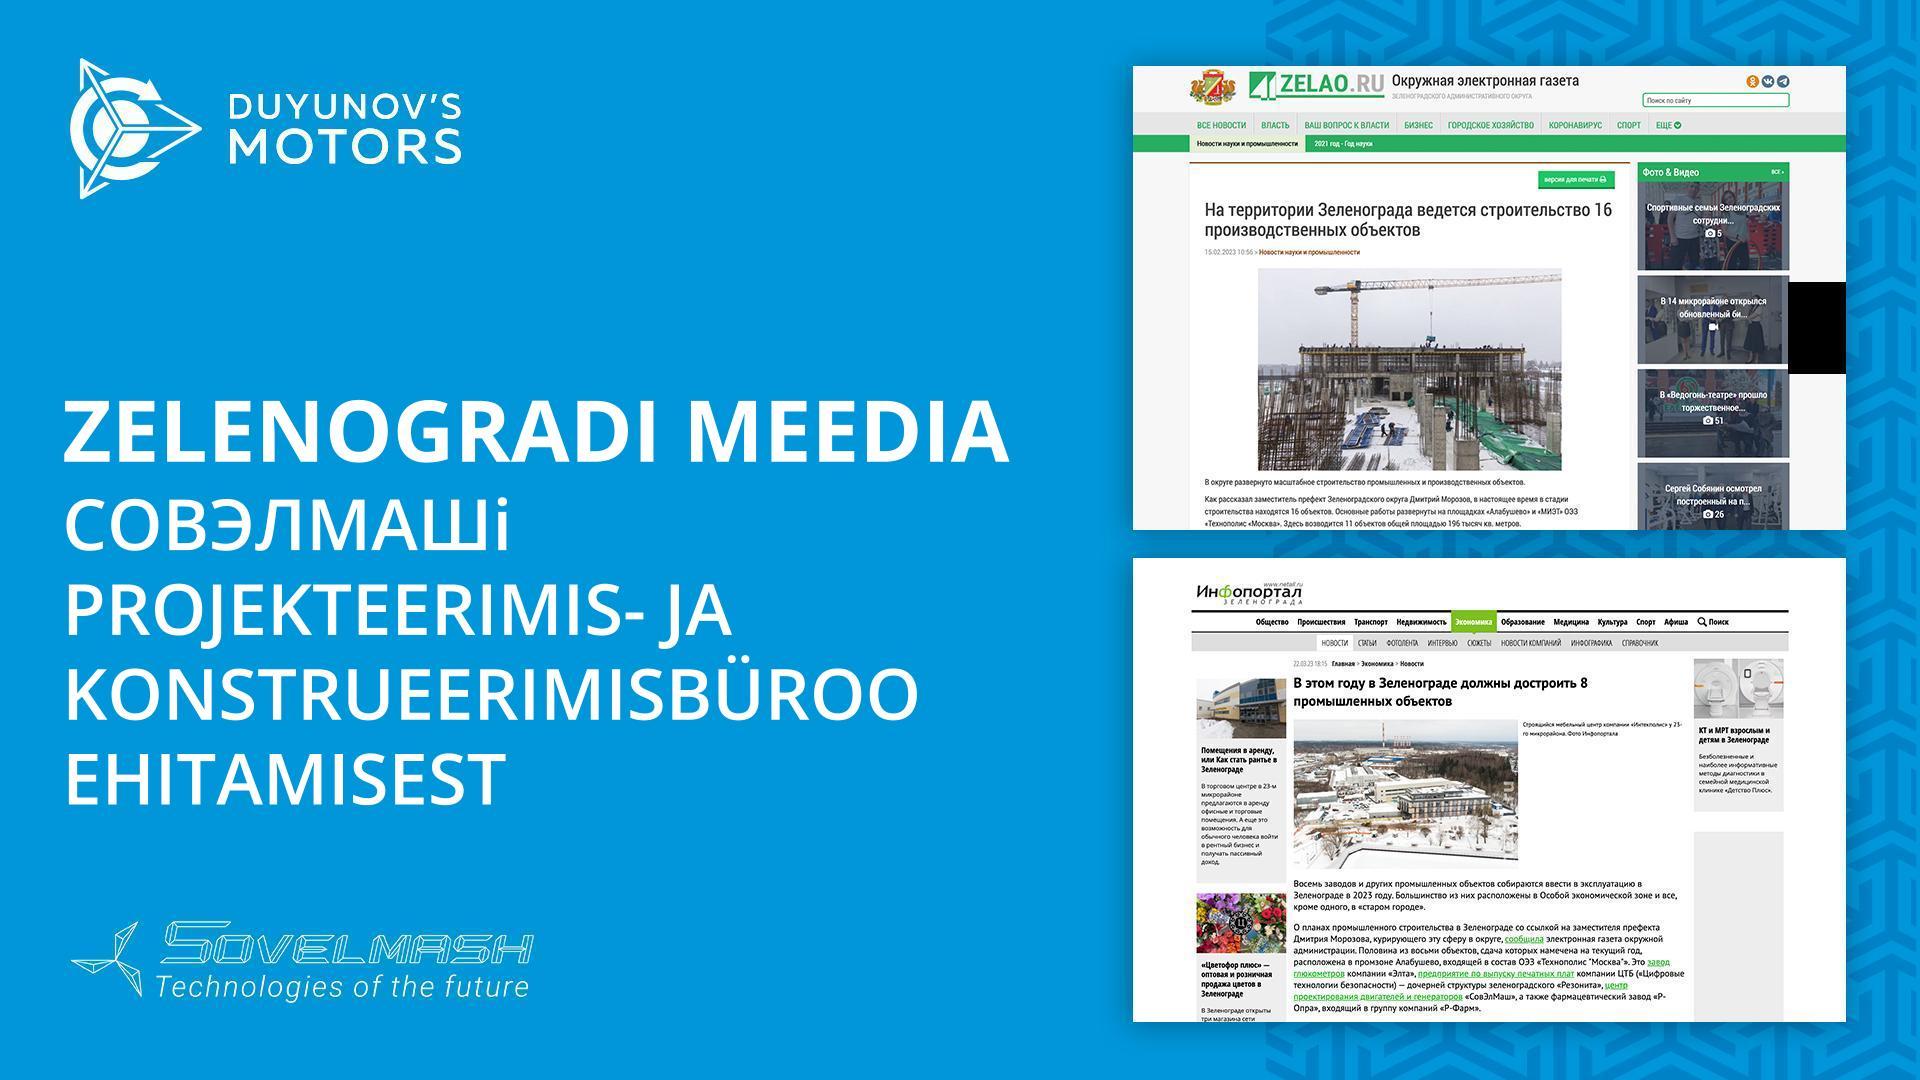 Zelenogradi meedia Совэлмашi projekteerimis- ja konstrueerimisbüroo ehitamisest